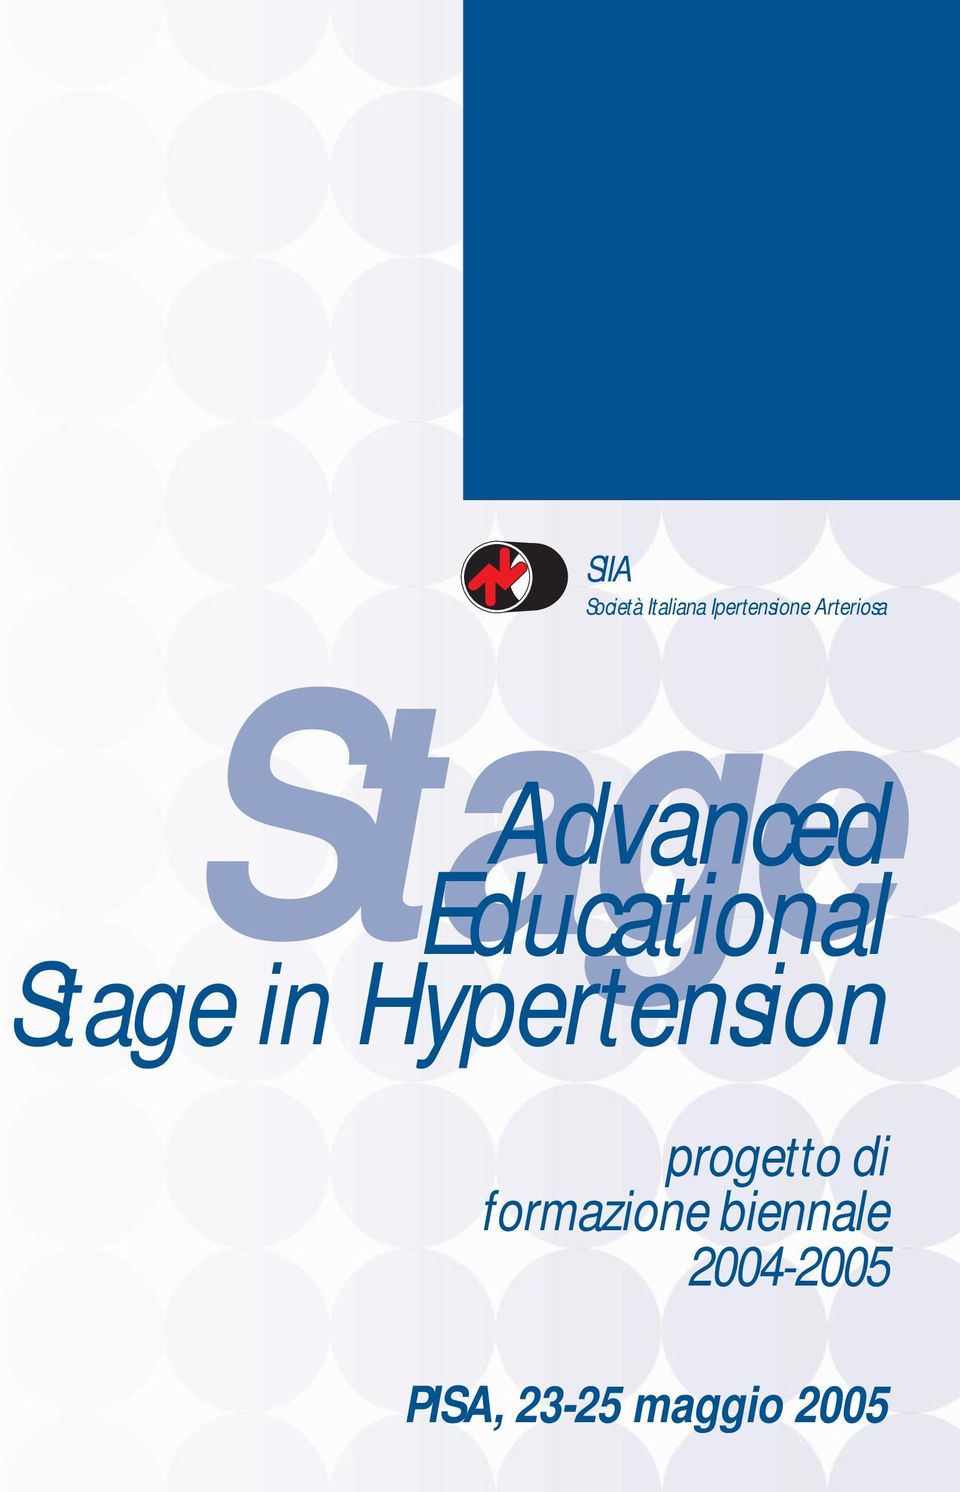 Stage in Hypertension progetto di